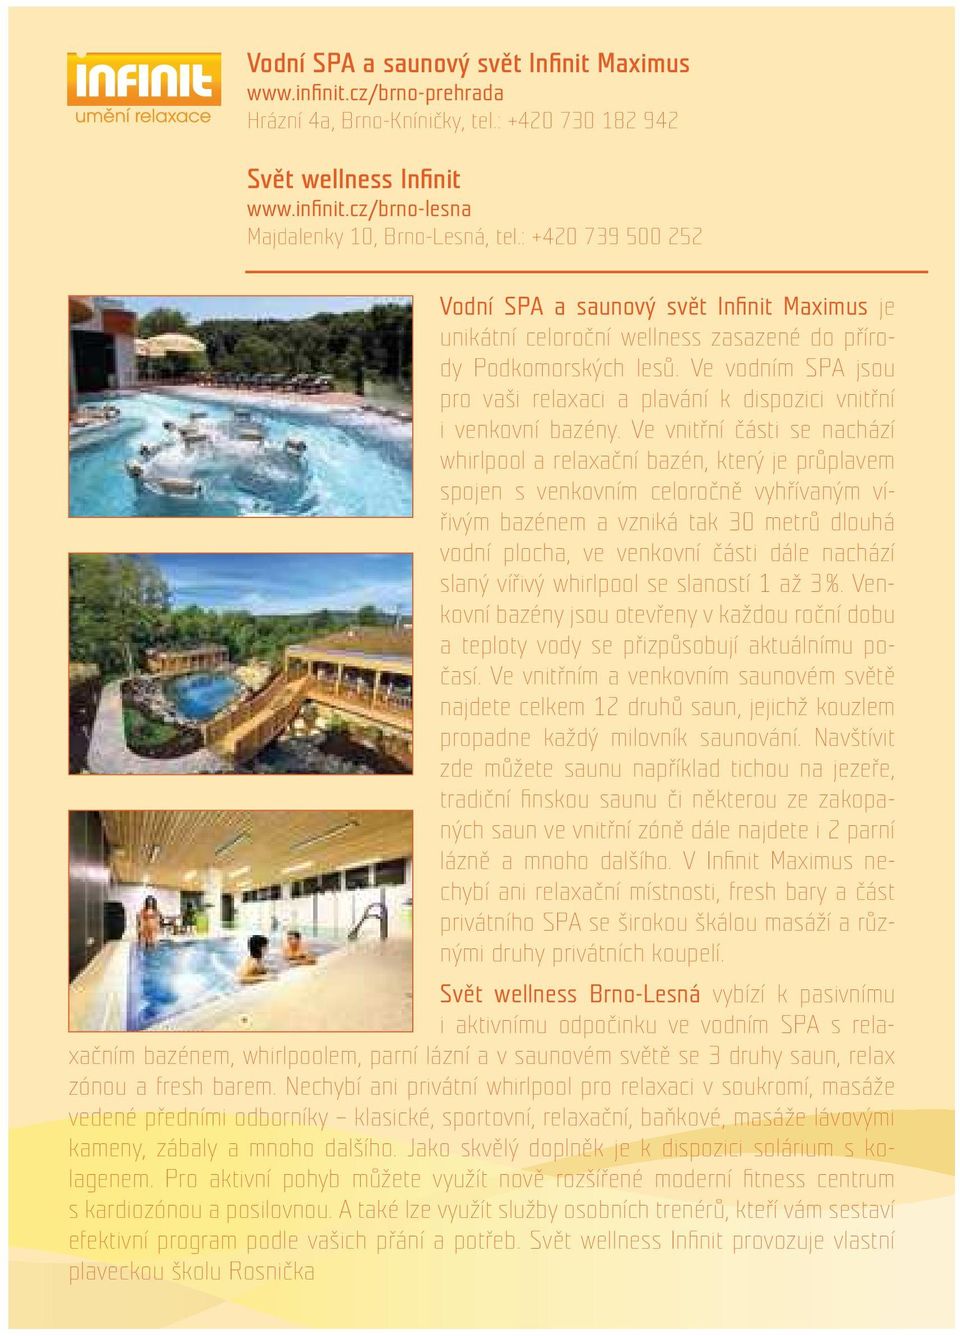 Ve vodním SPA jsou pro vaši relaxaci a plavání k dispozici vnitřní i venkovní bazény.